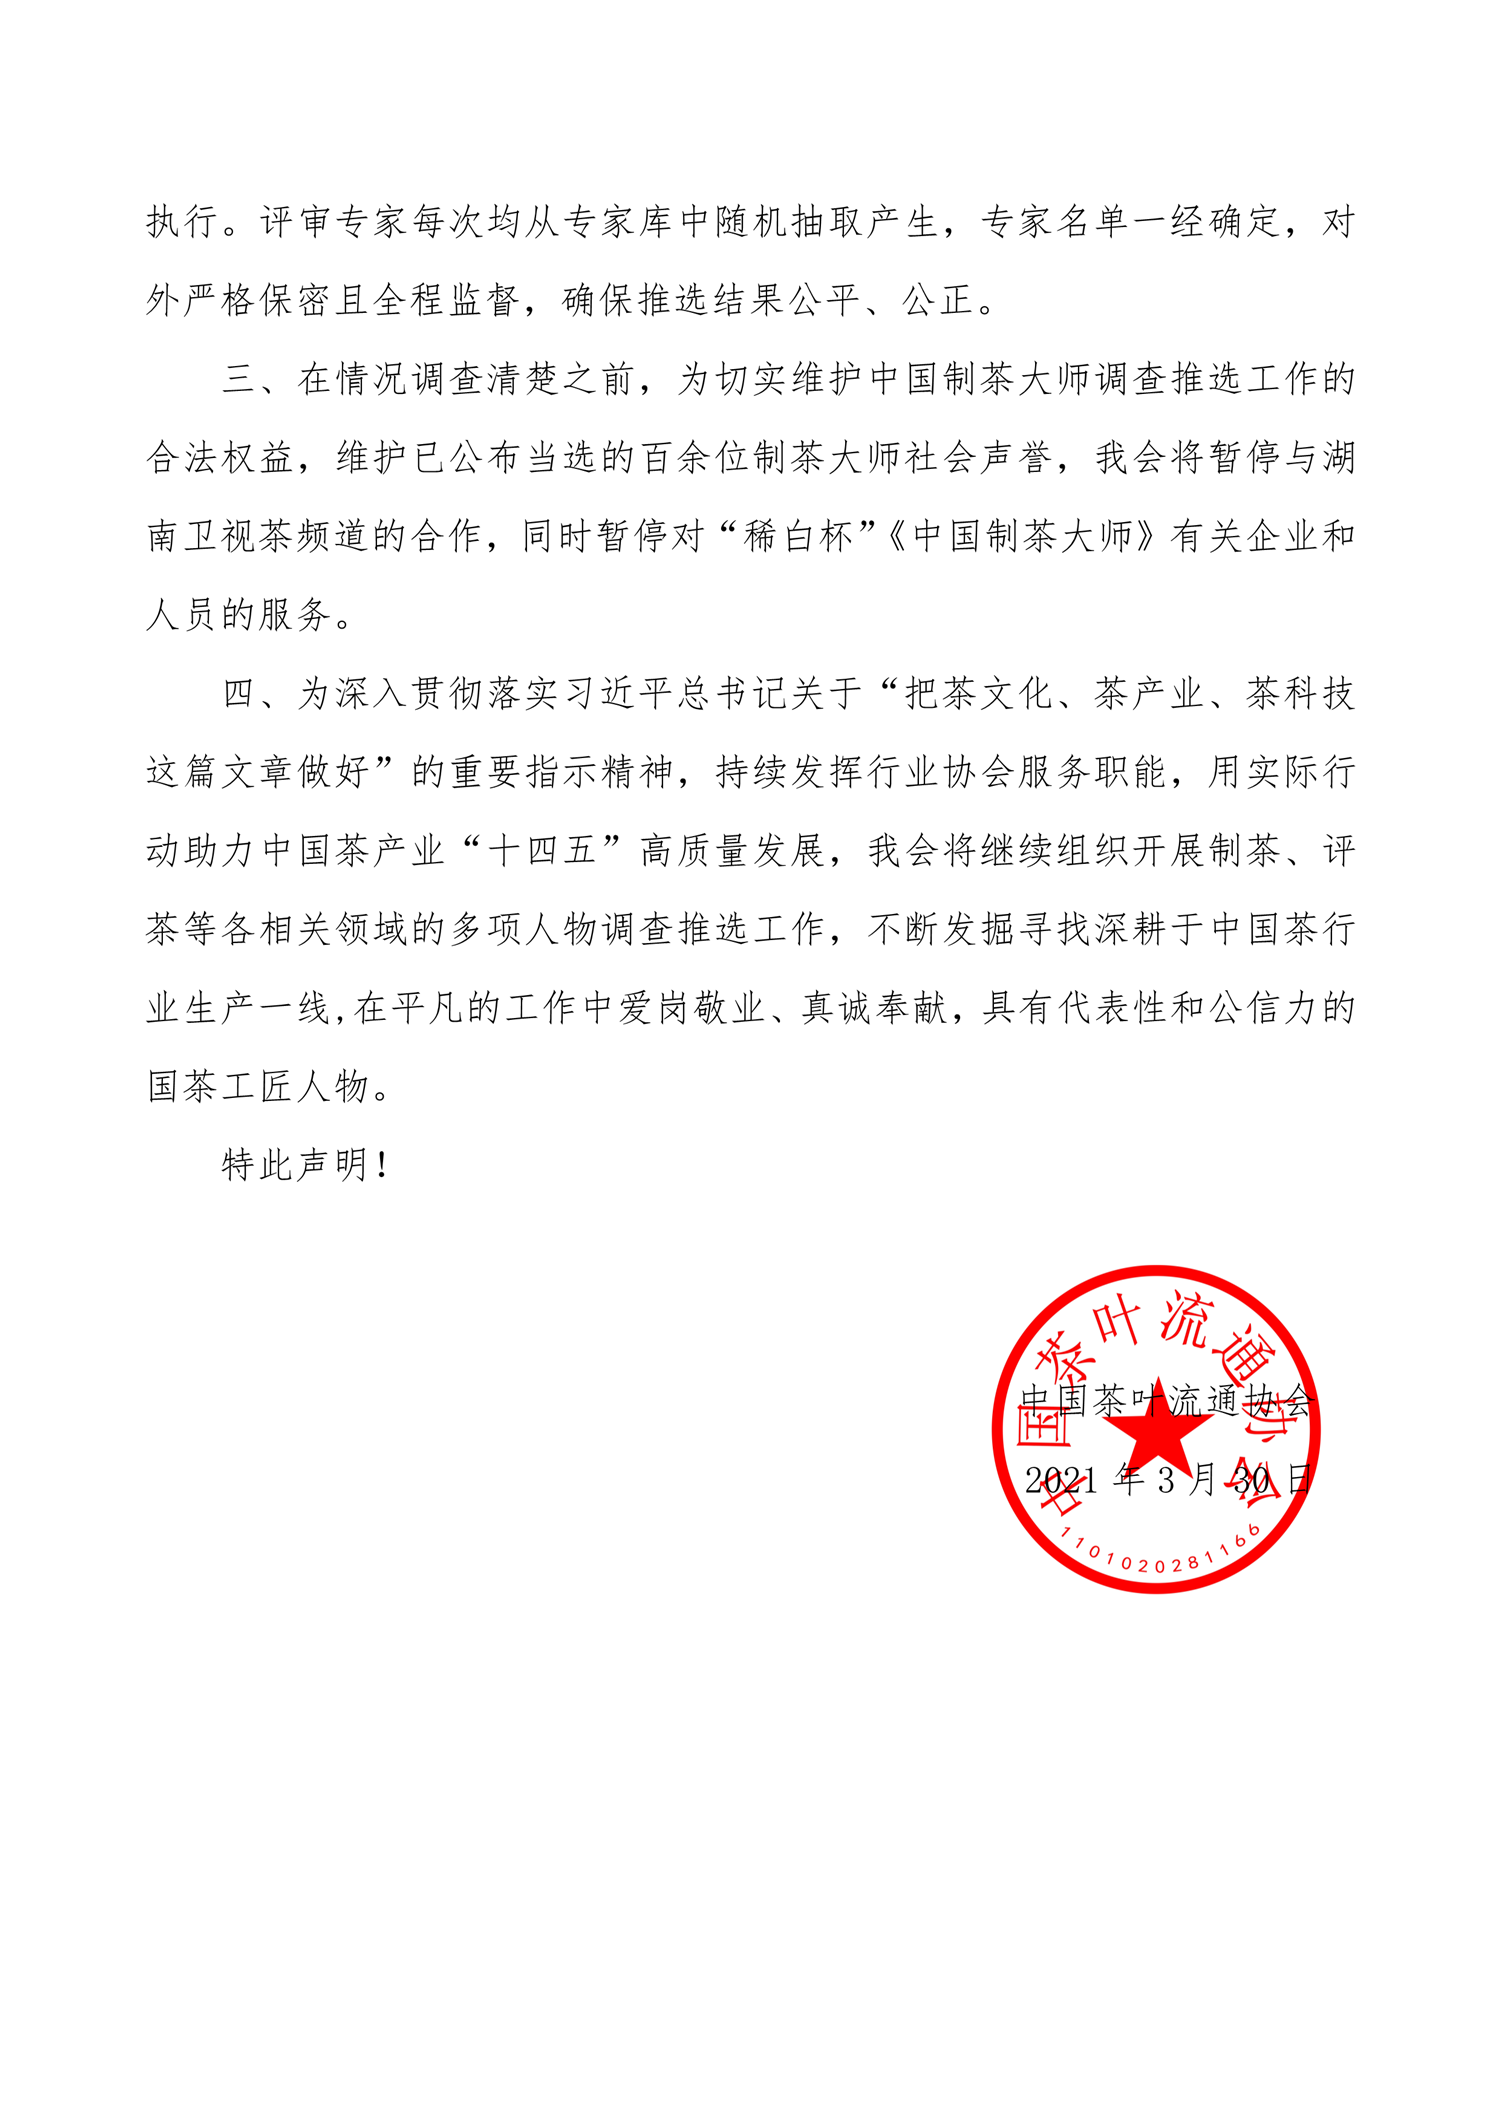 关于“中国制茶大师”调查推选工作的声明-2.png